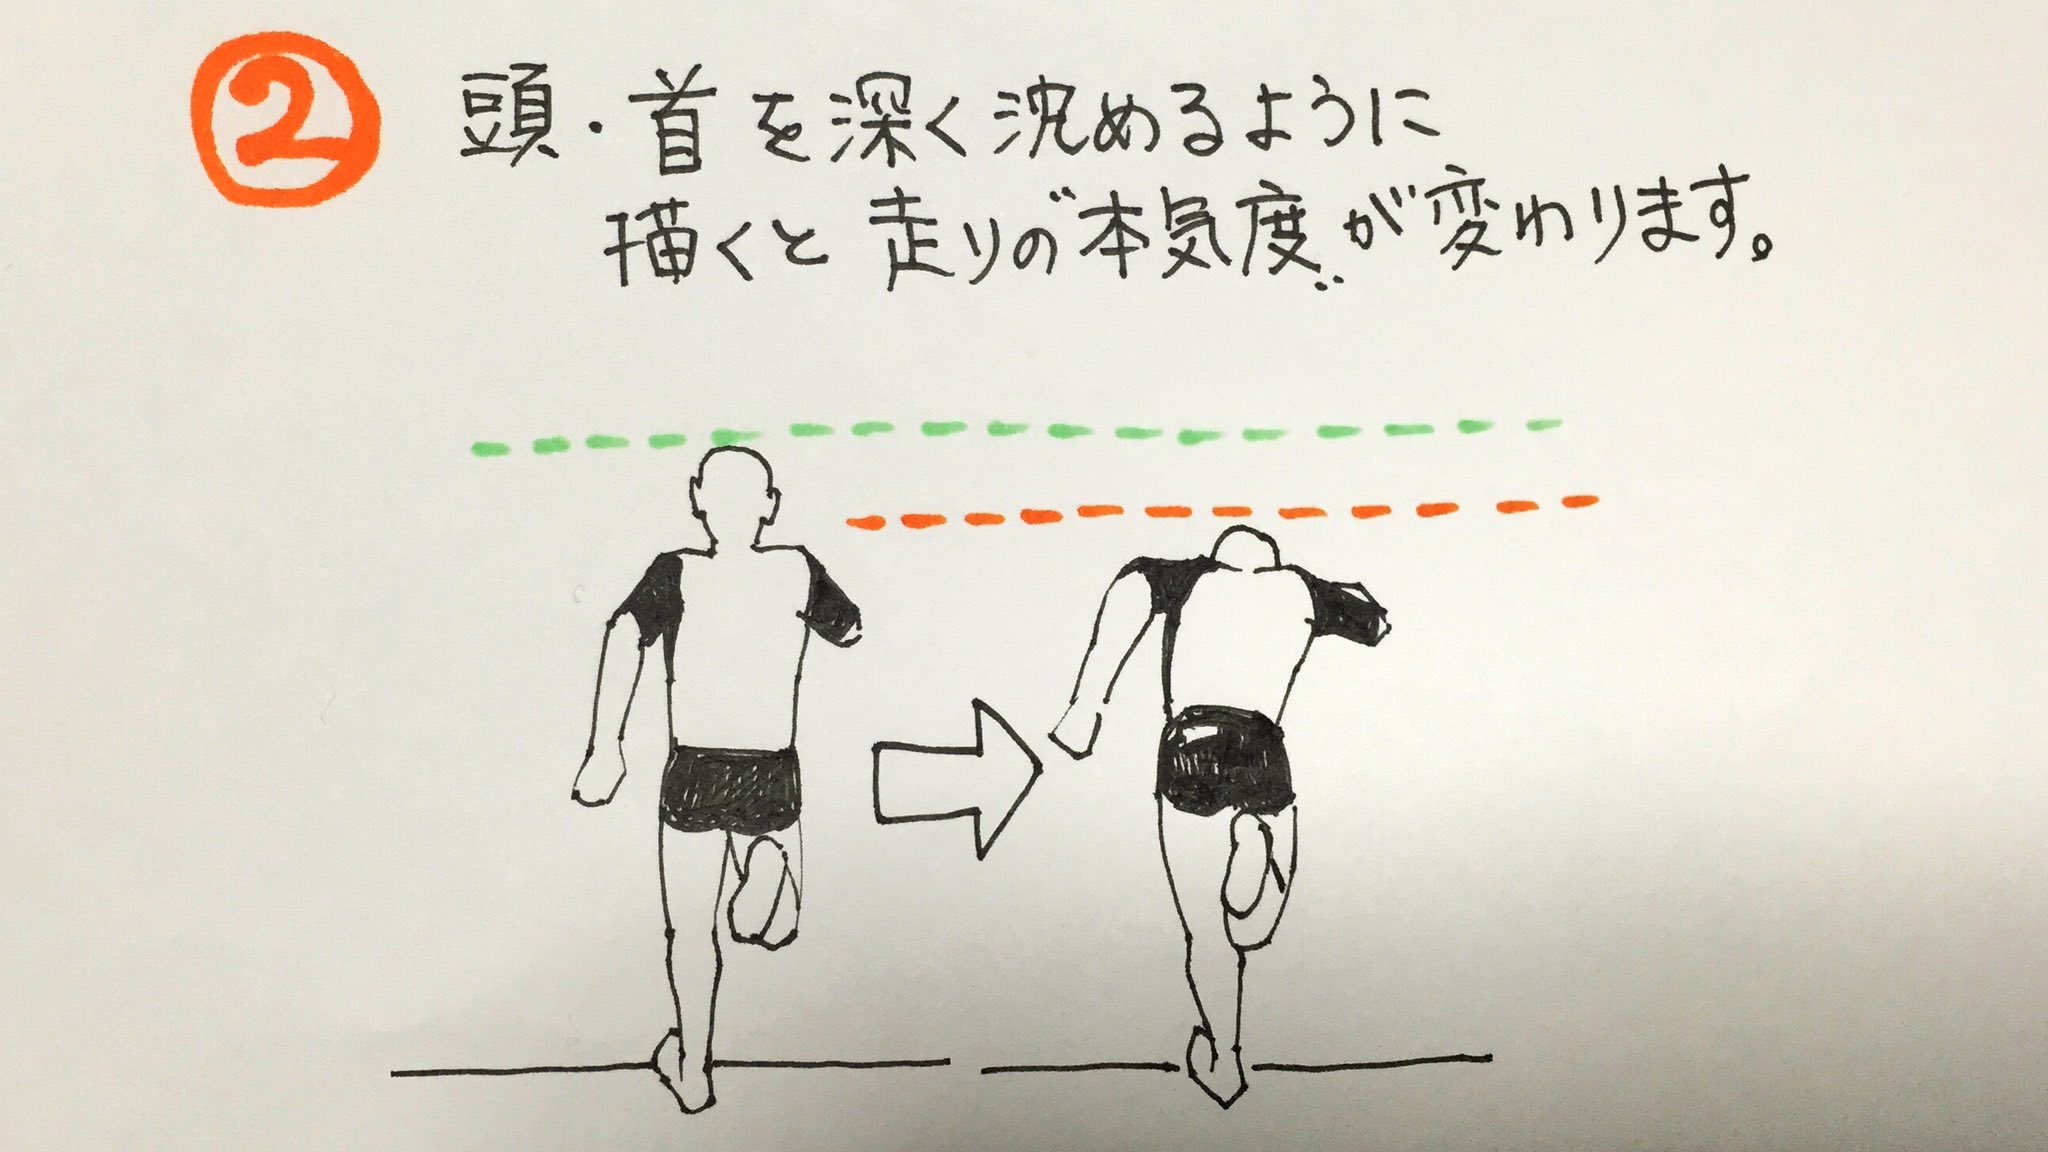 吉村拓也 イラスト講座 アクションシーンにおける 体の描き方 の 重要ポイント 動いている人間の カラダの軸 が棒立ちになり過ぎないよう注意 走るアクションでは首が本気度のパラメータになる ワキをしっかり締めることで カッコイイ